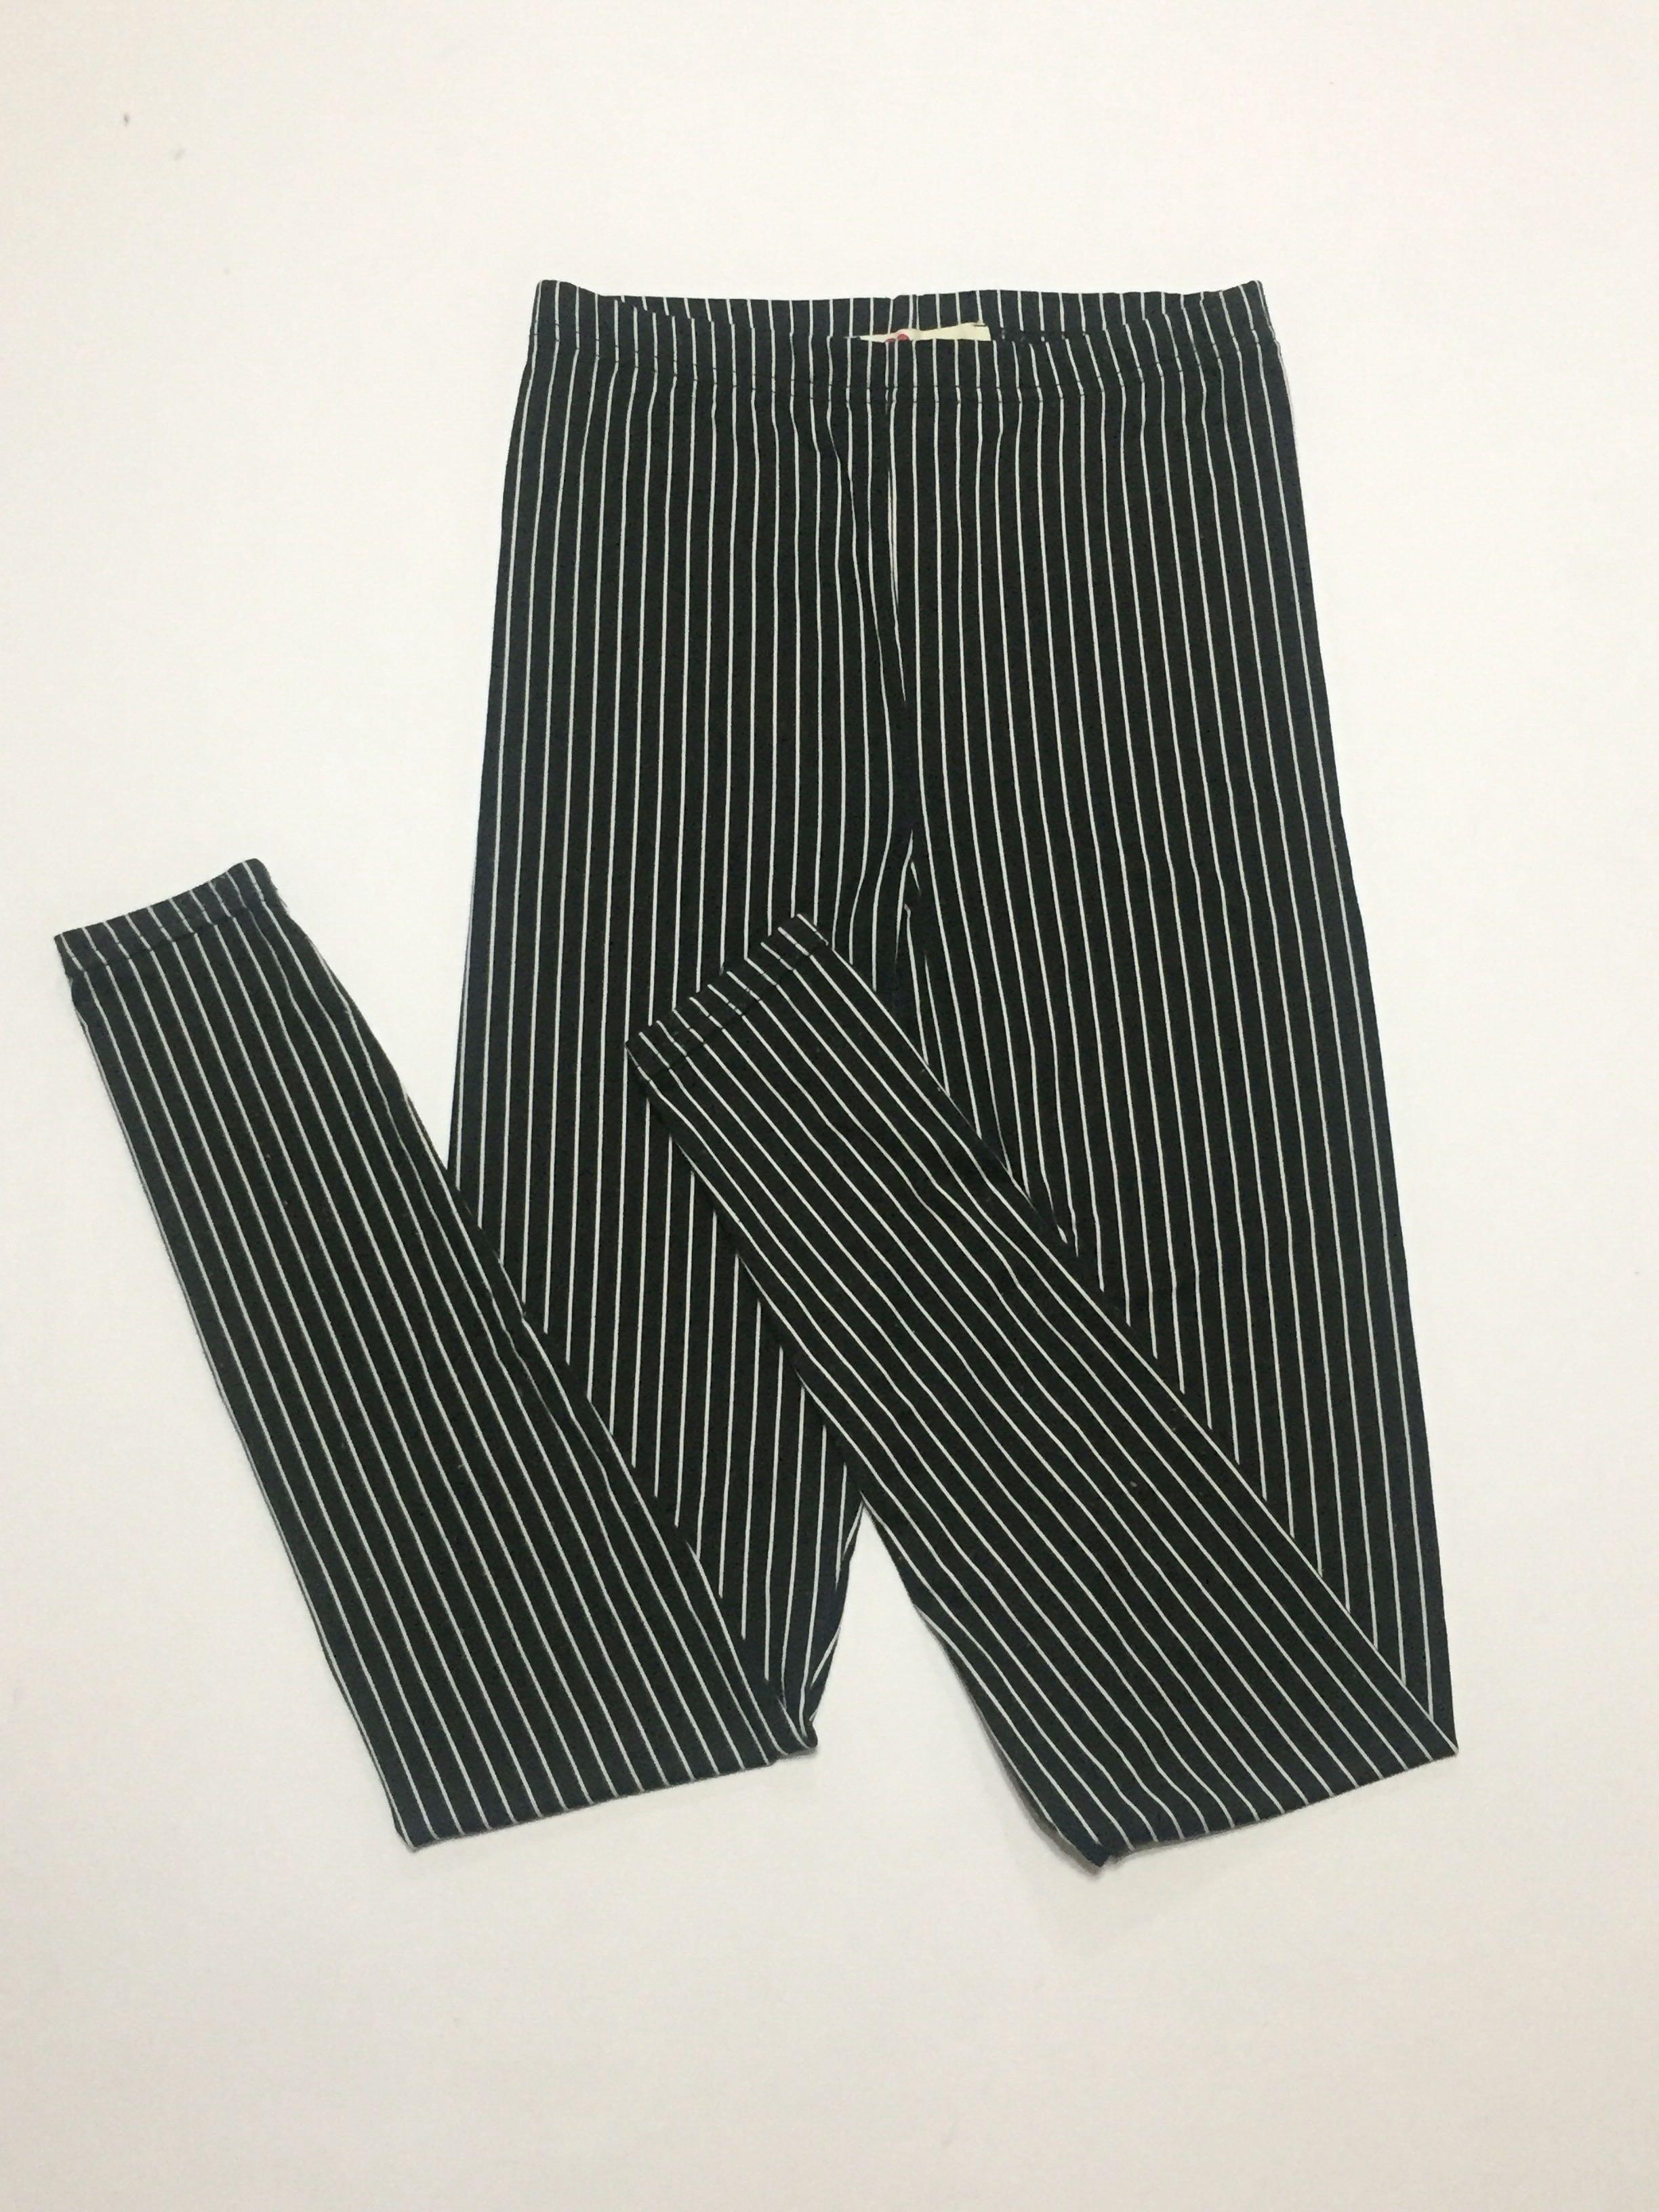 Black White Perpendicular Stripe Leggings XS S M L XL 2XL 3XL plus size striped 